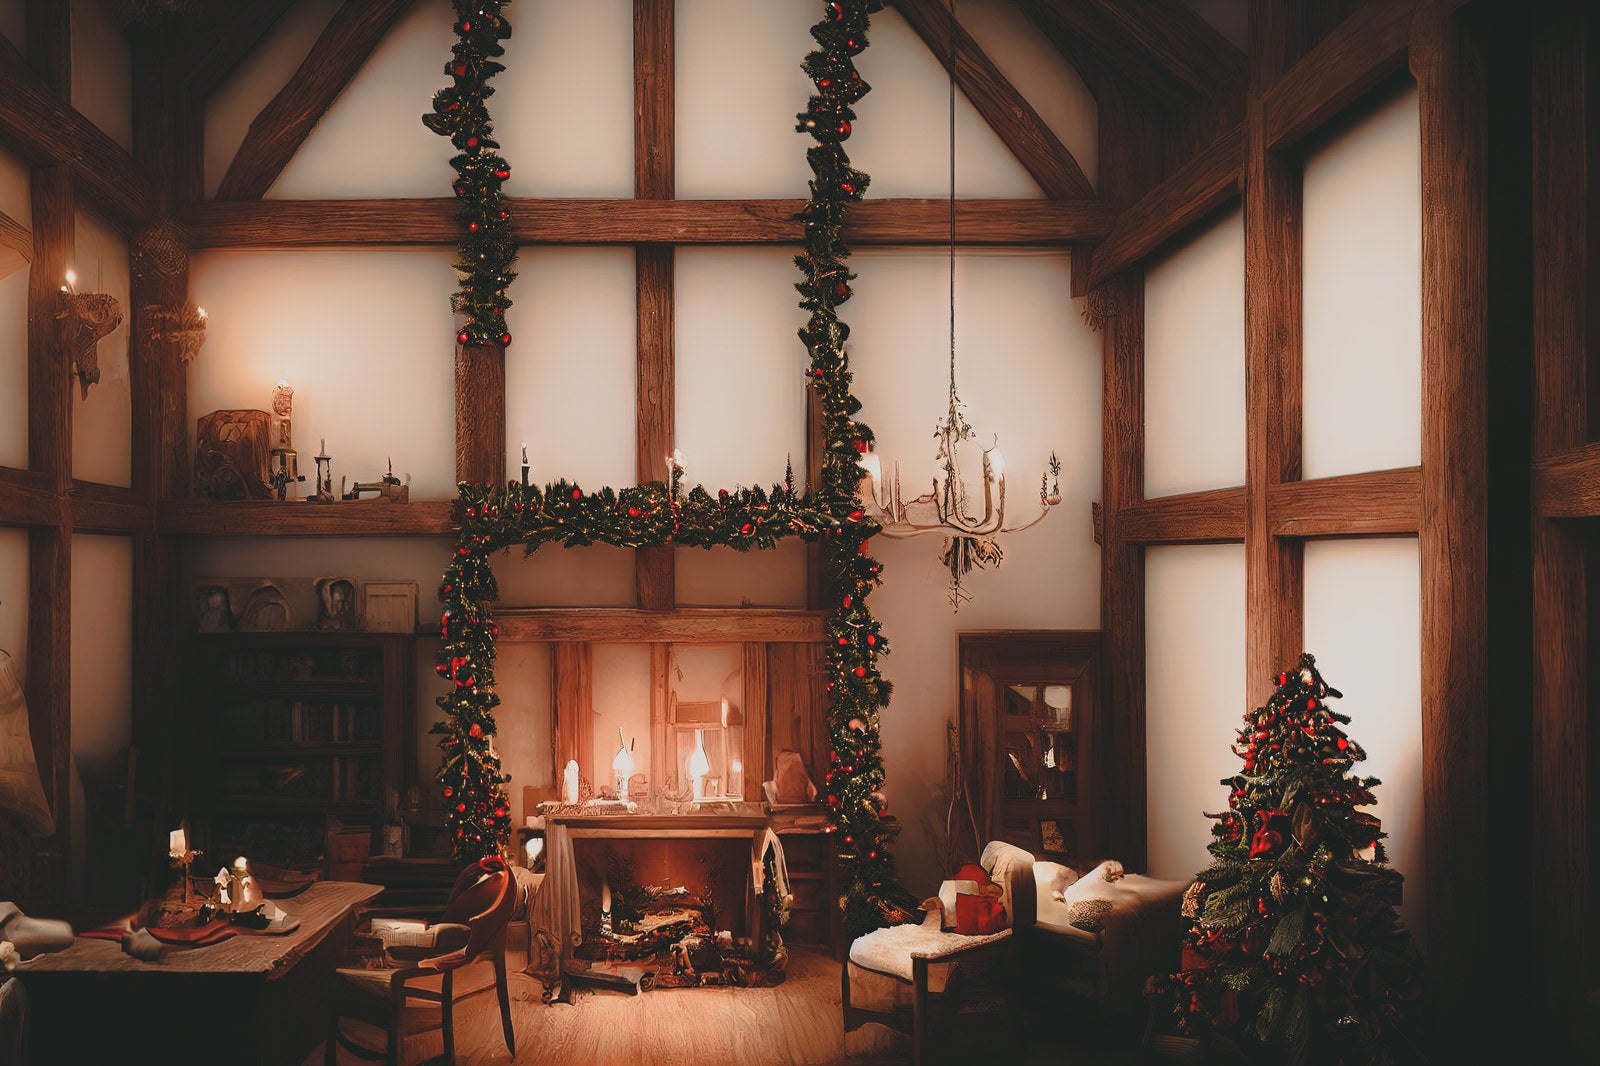 「クリスマスの飾り付けされた暖炉のある山小屋」の写真